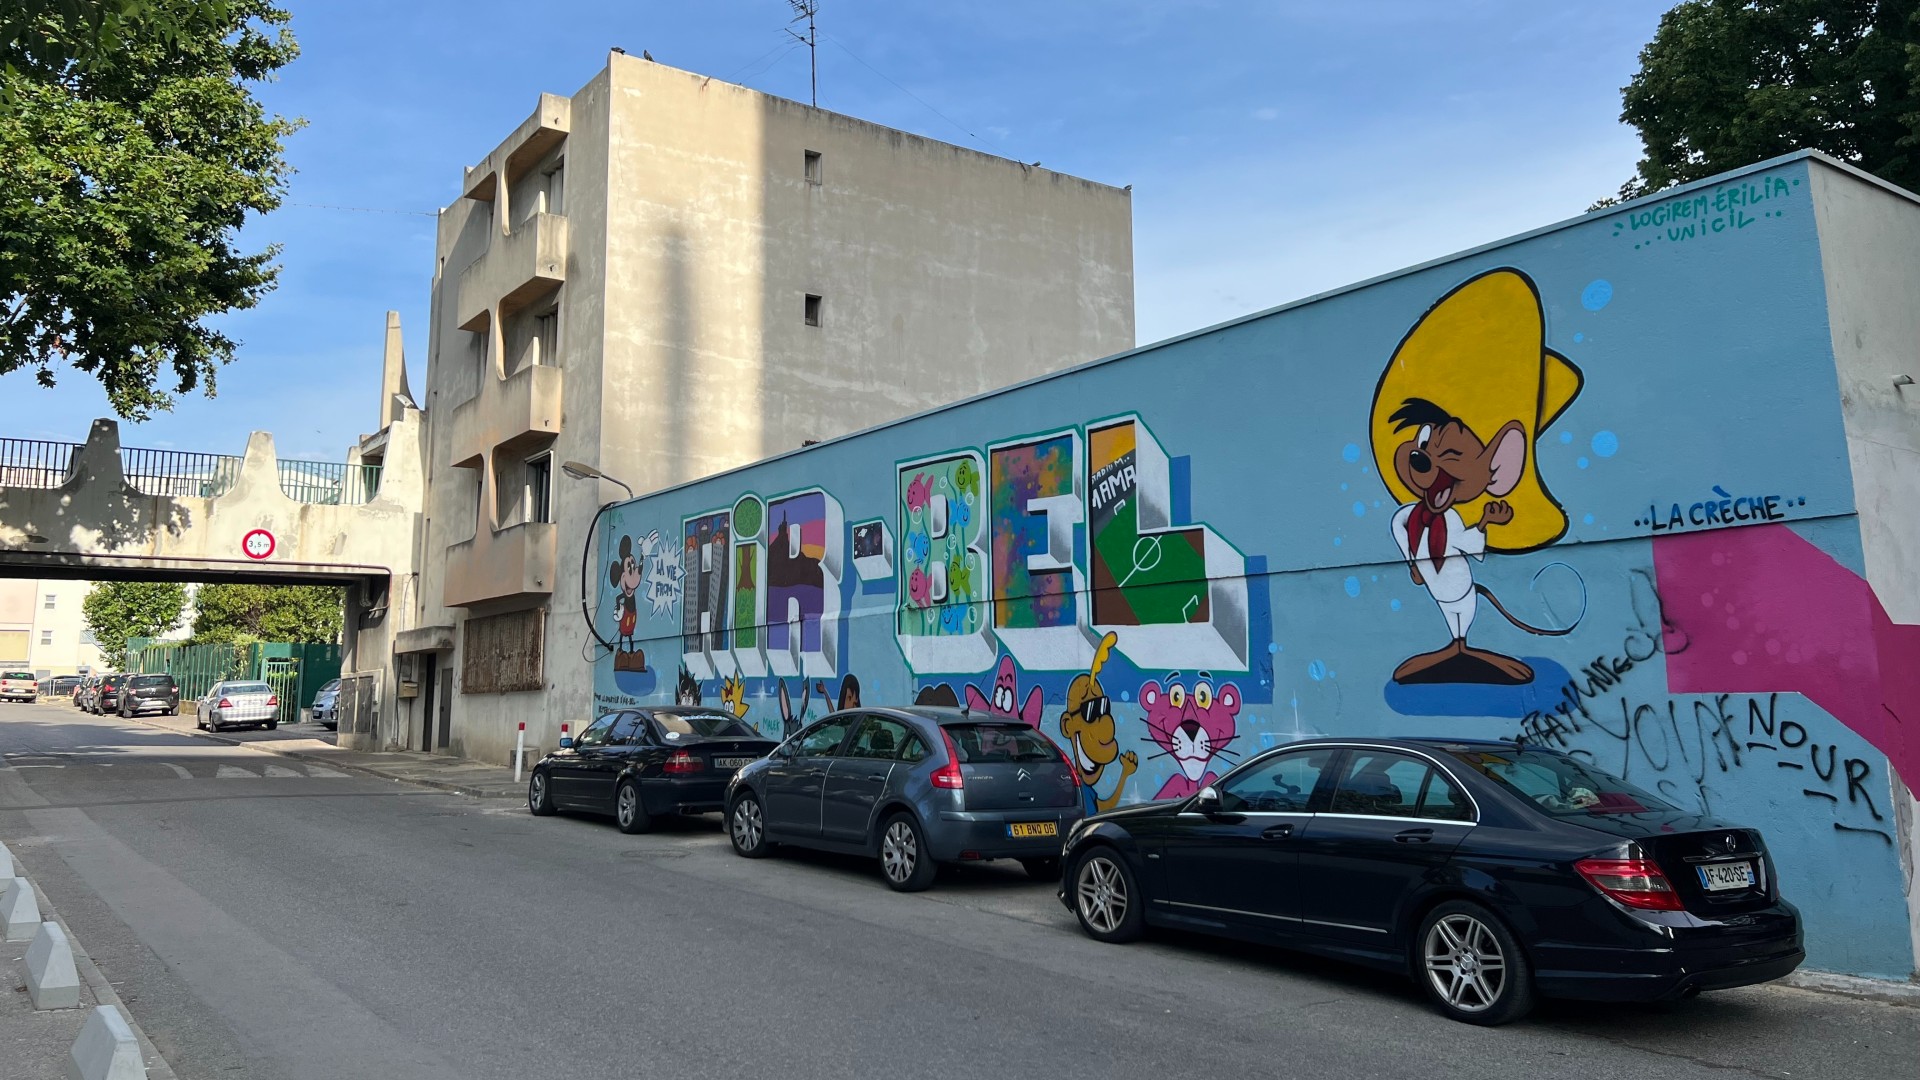 En 2017, des cas de légionelles ont été découverts dans l’eau de la cité d’Air-Bel, dans l’est de Marseille, l’un des quartiers les plus pauvres de la ville. Six ans plus tard, le problème de la qualité de l’eau n’est toujours pas réglé (MEE/Frank Andrews)